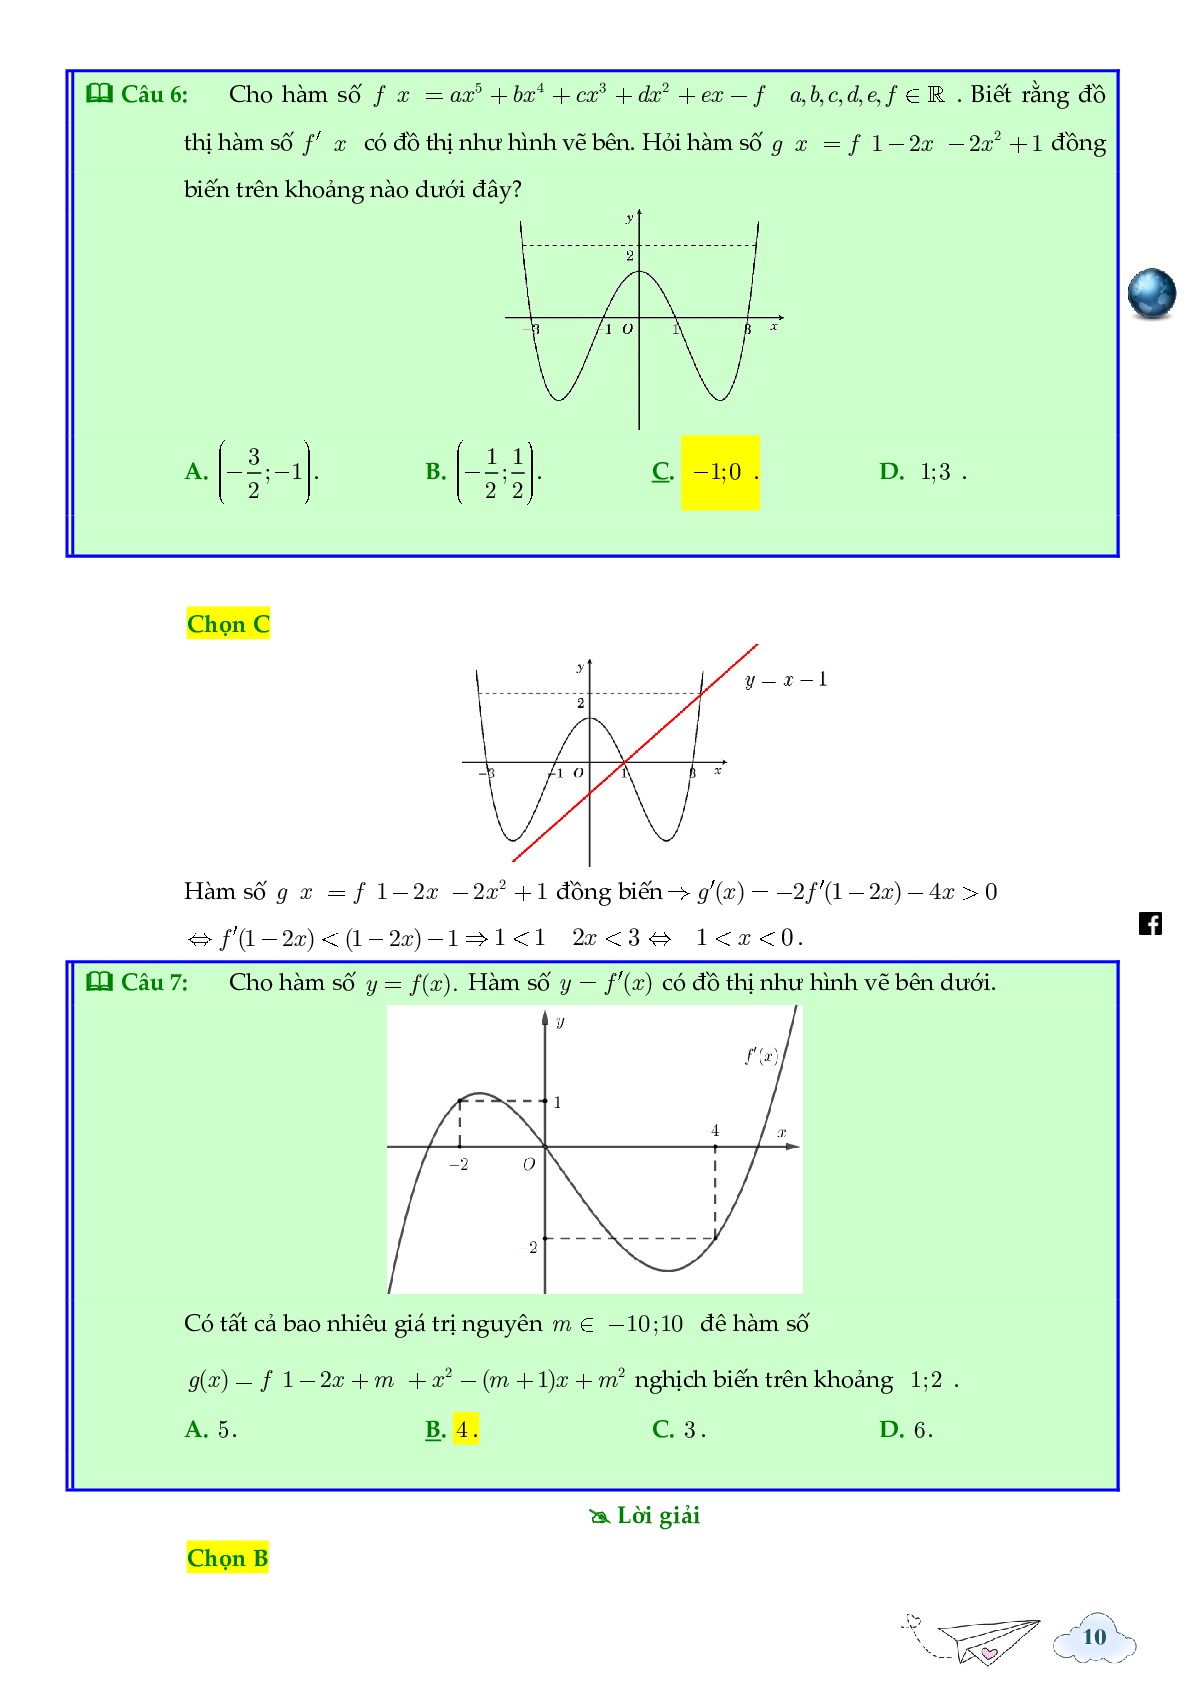 Tính đơn điệu của hàm ẩn được cho bởi đồ thị hàm f'(x) (trang 10)